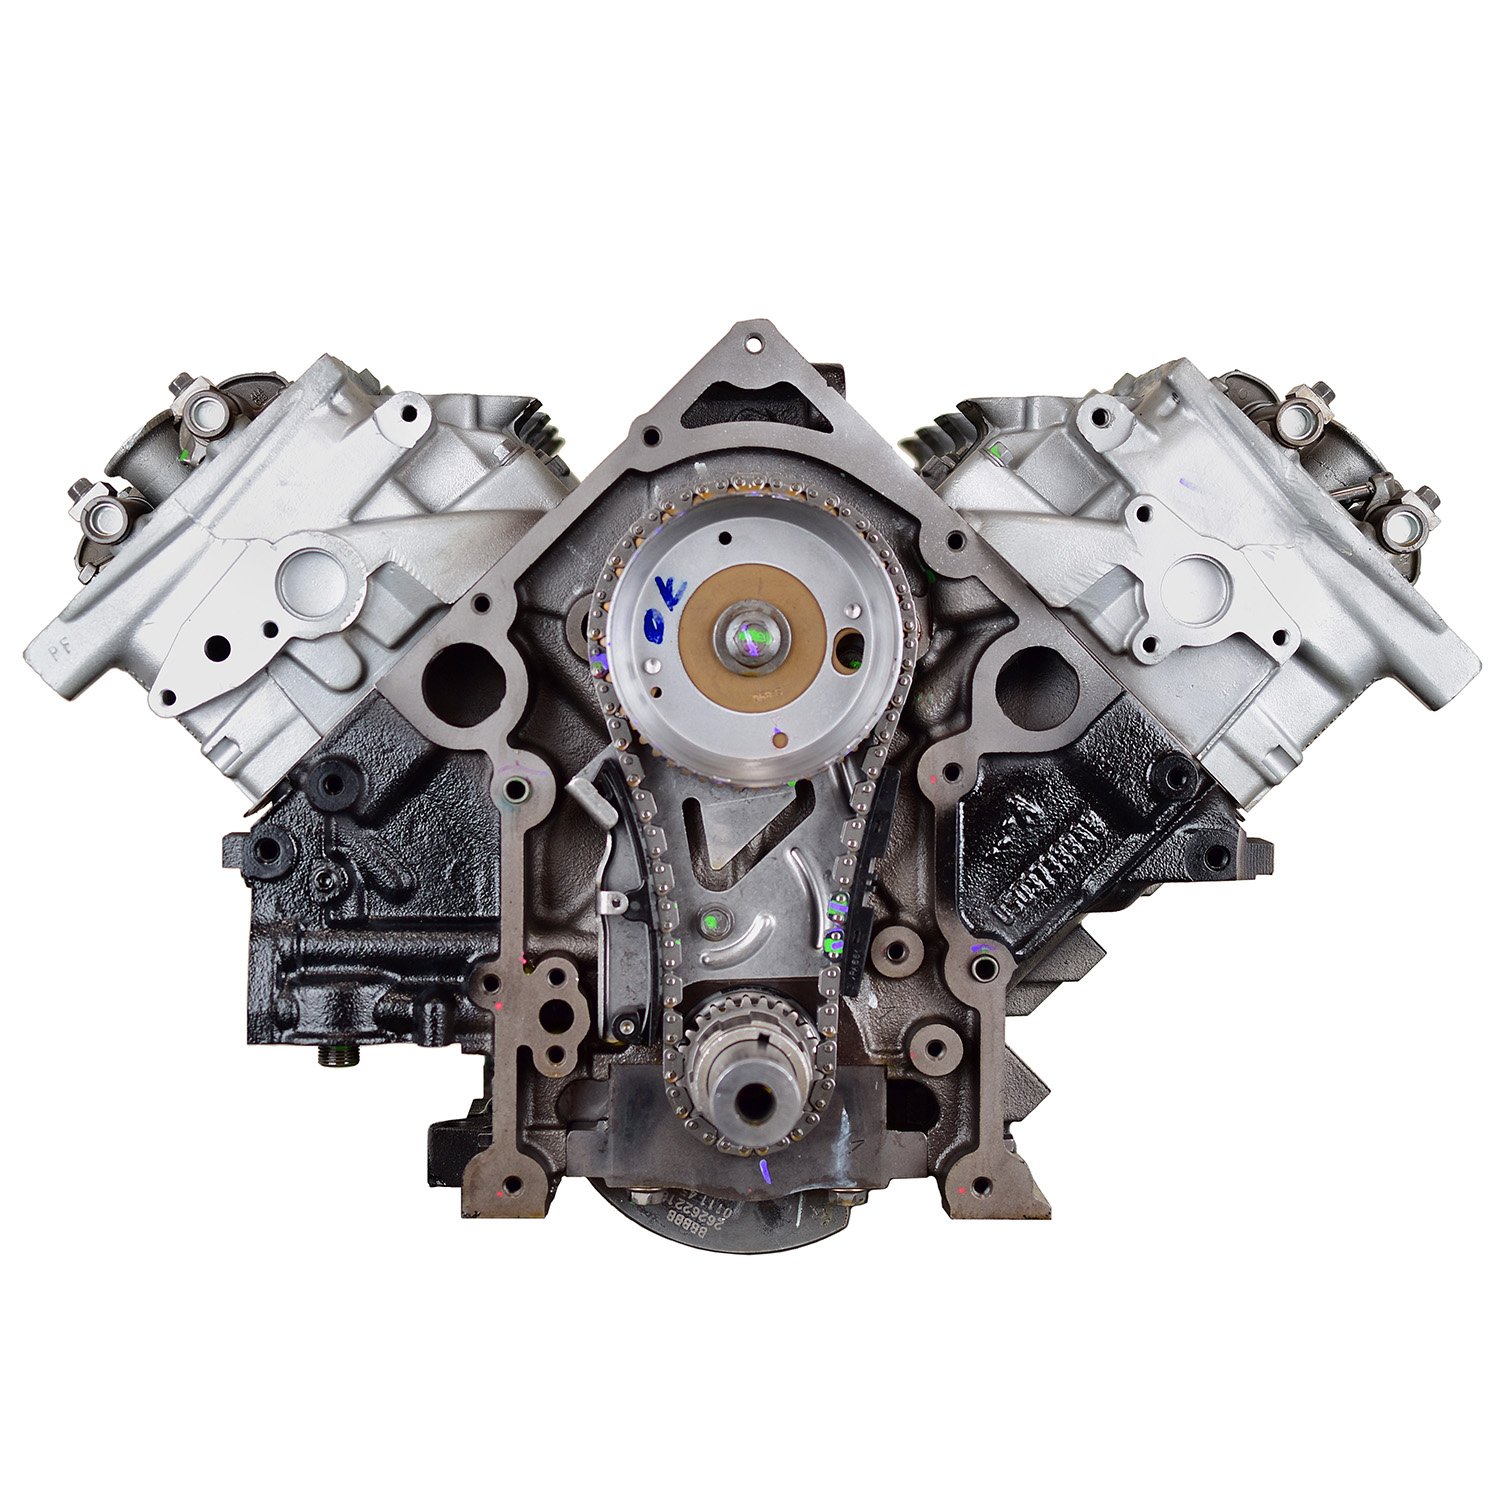 DDM1 Remanufactured Crate Engine for 2006-2010 Chrysler Models